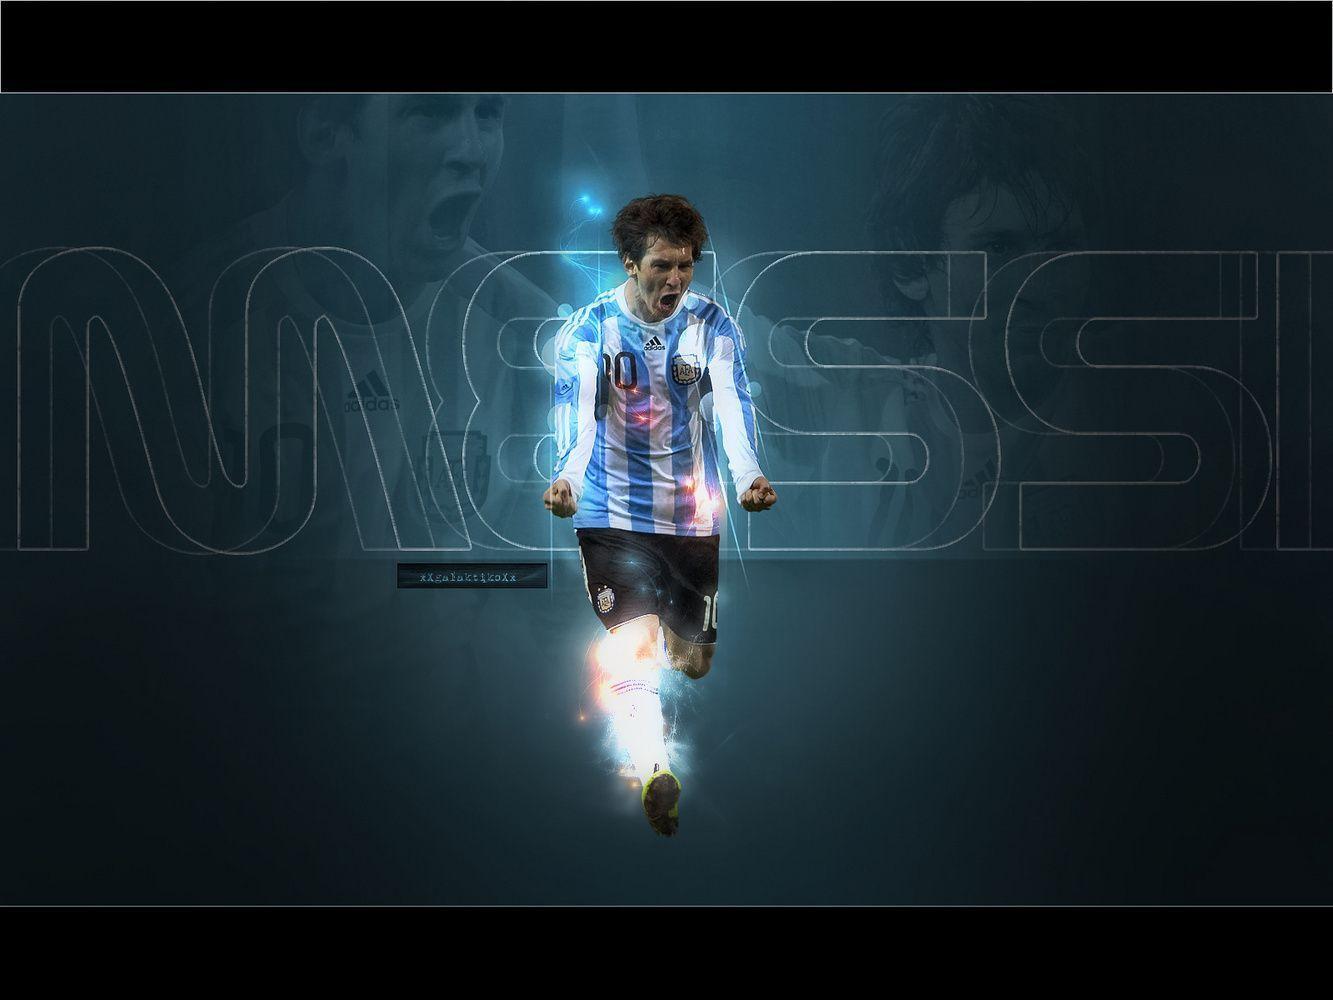 Lionel Messi Argentina Wallpaper Andres Messi Fan Art